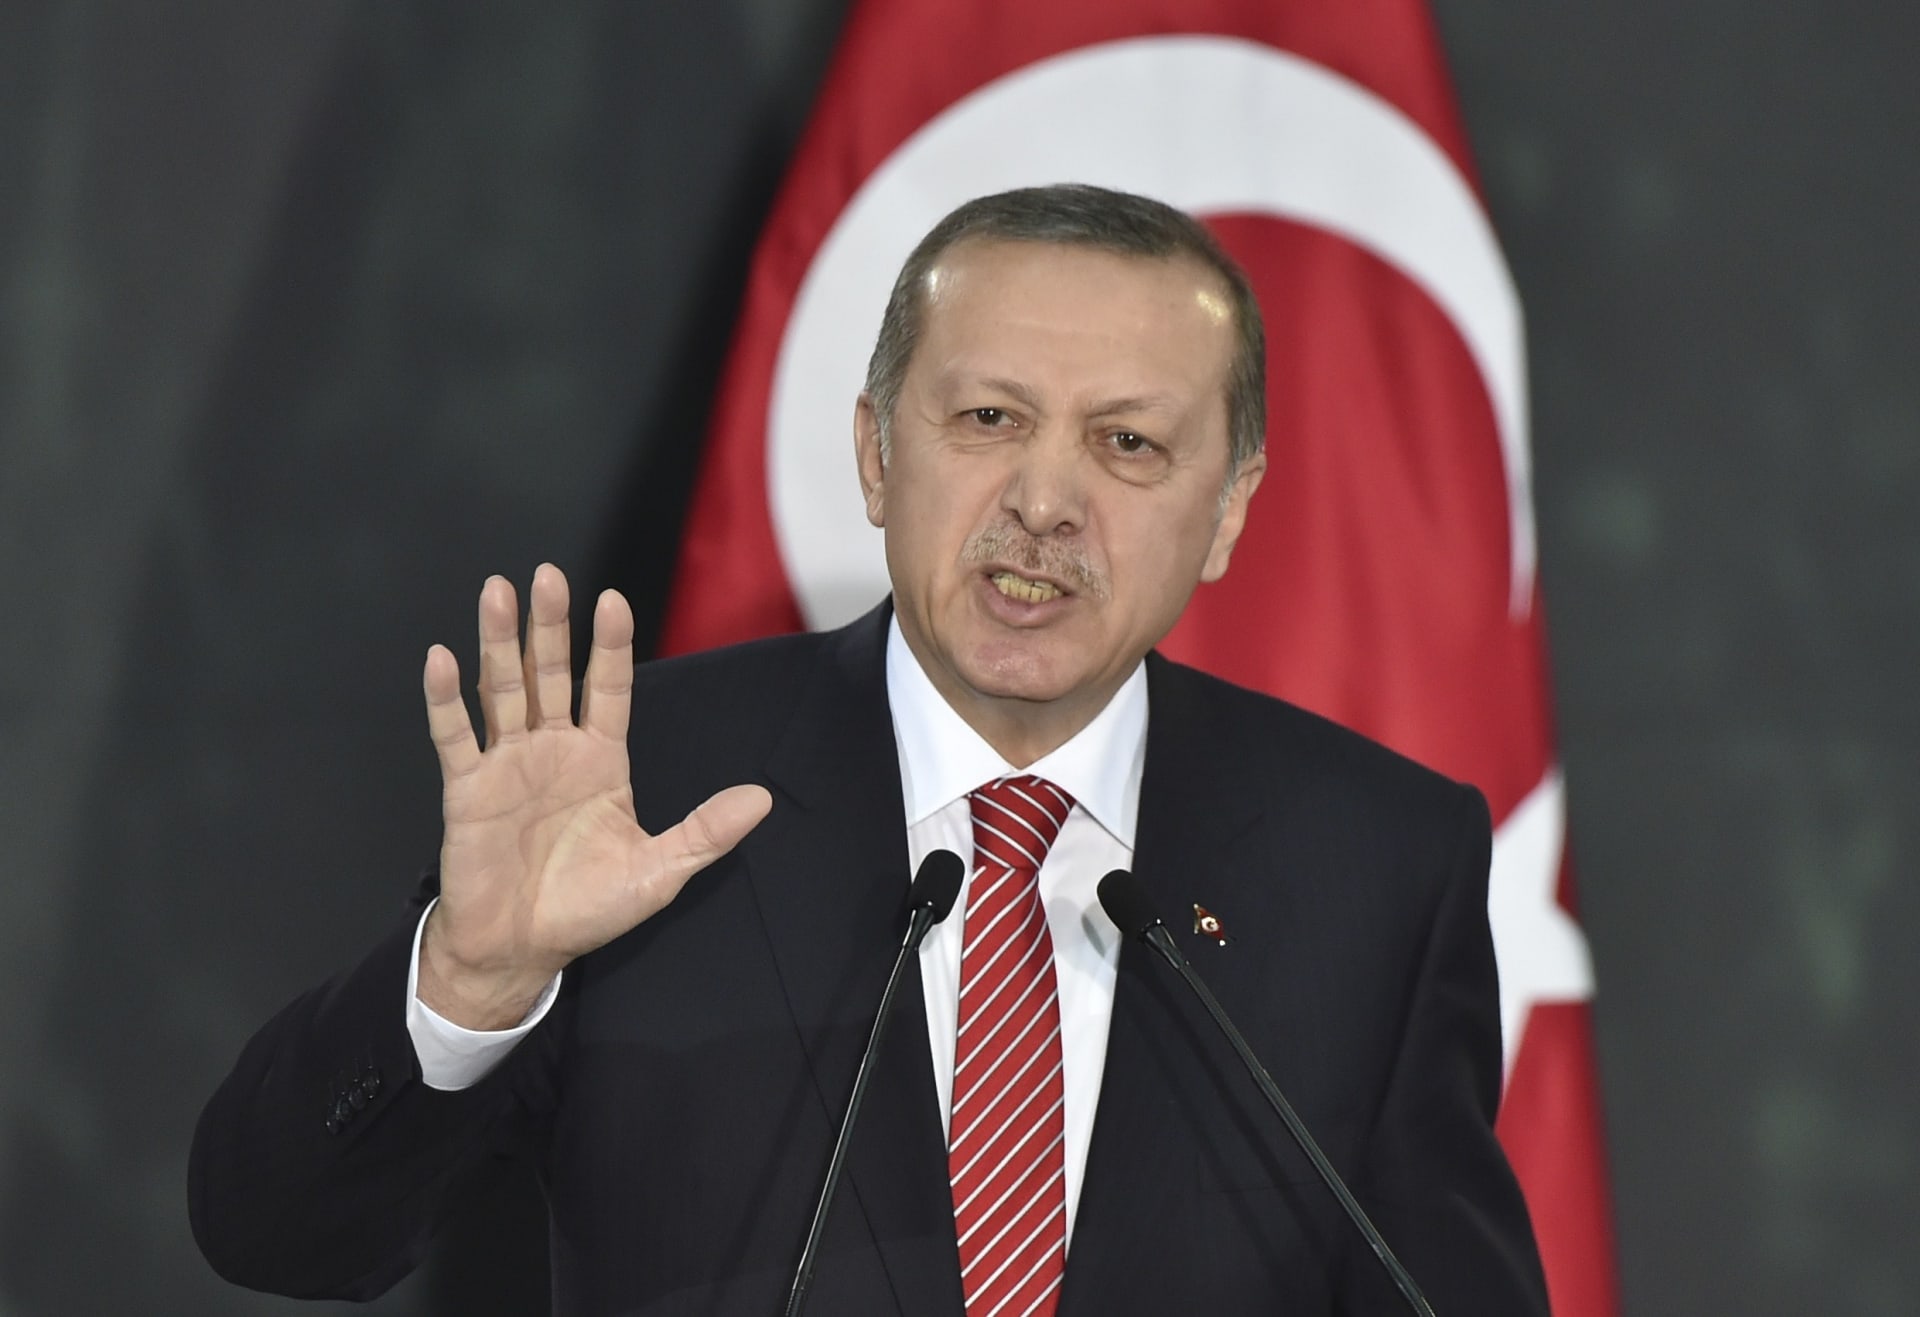 أردوغان: سأوافق على قانون الإعدام بعد موافقة البرلمان.. وتسعى قوى خارجية لـ"تركيع" تركيا ولكننا لا نركع إلا لله